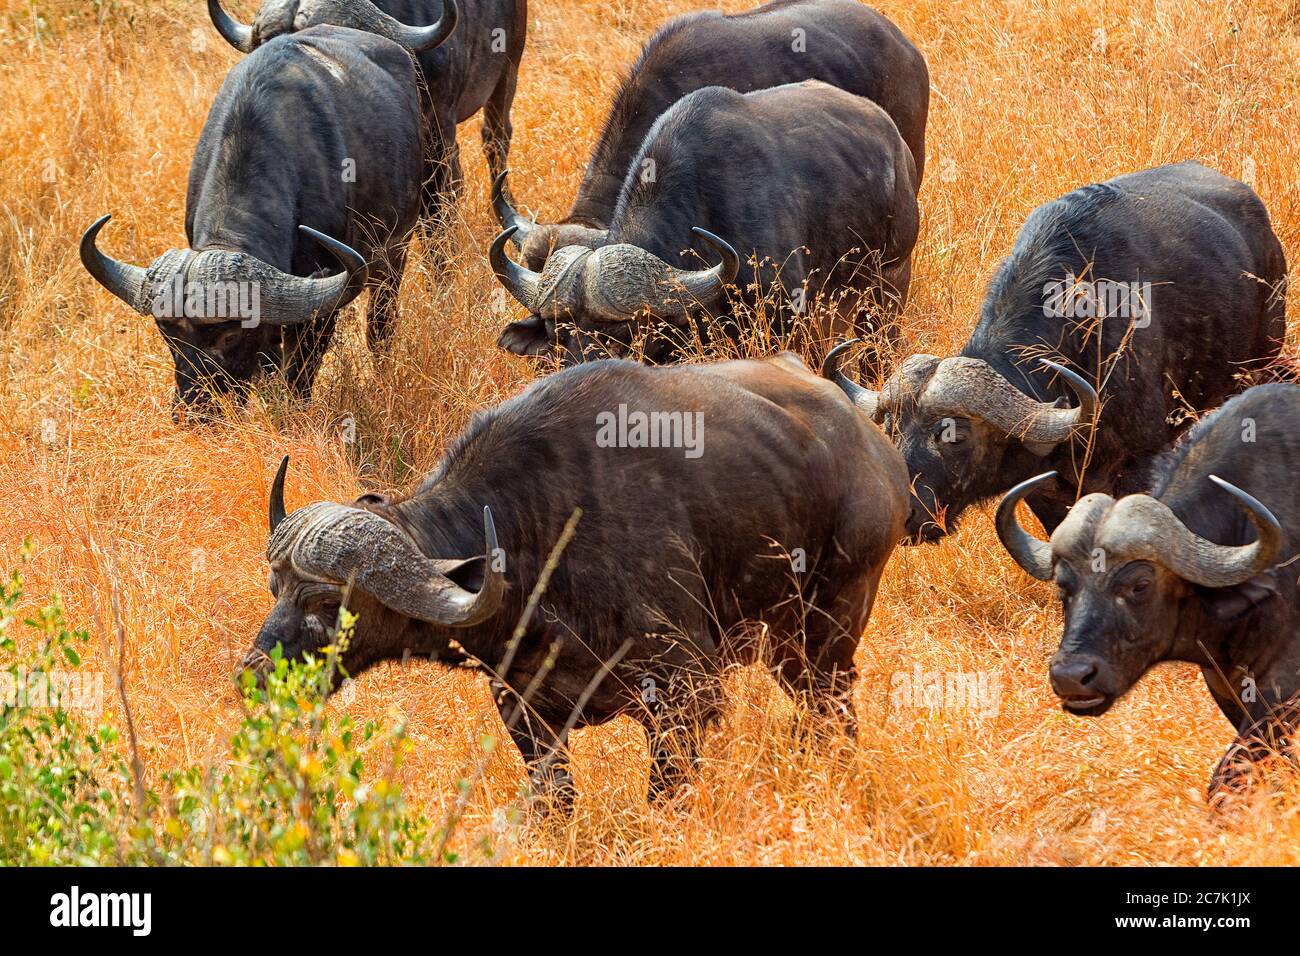 Cabo Buffalo en Sabi Sands UN búfalo de cabo entre la hierba alta del fanerpo en la Reserva de Sabi Sands del sistema del Parque Nacional Kruger. Foto de stock